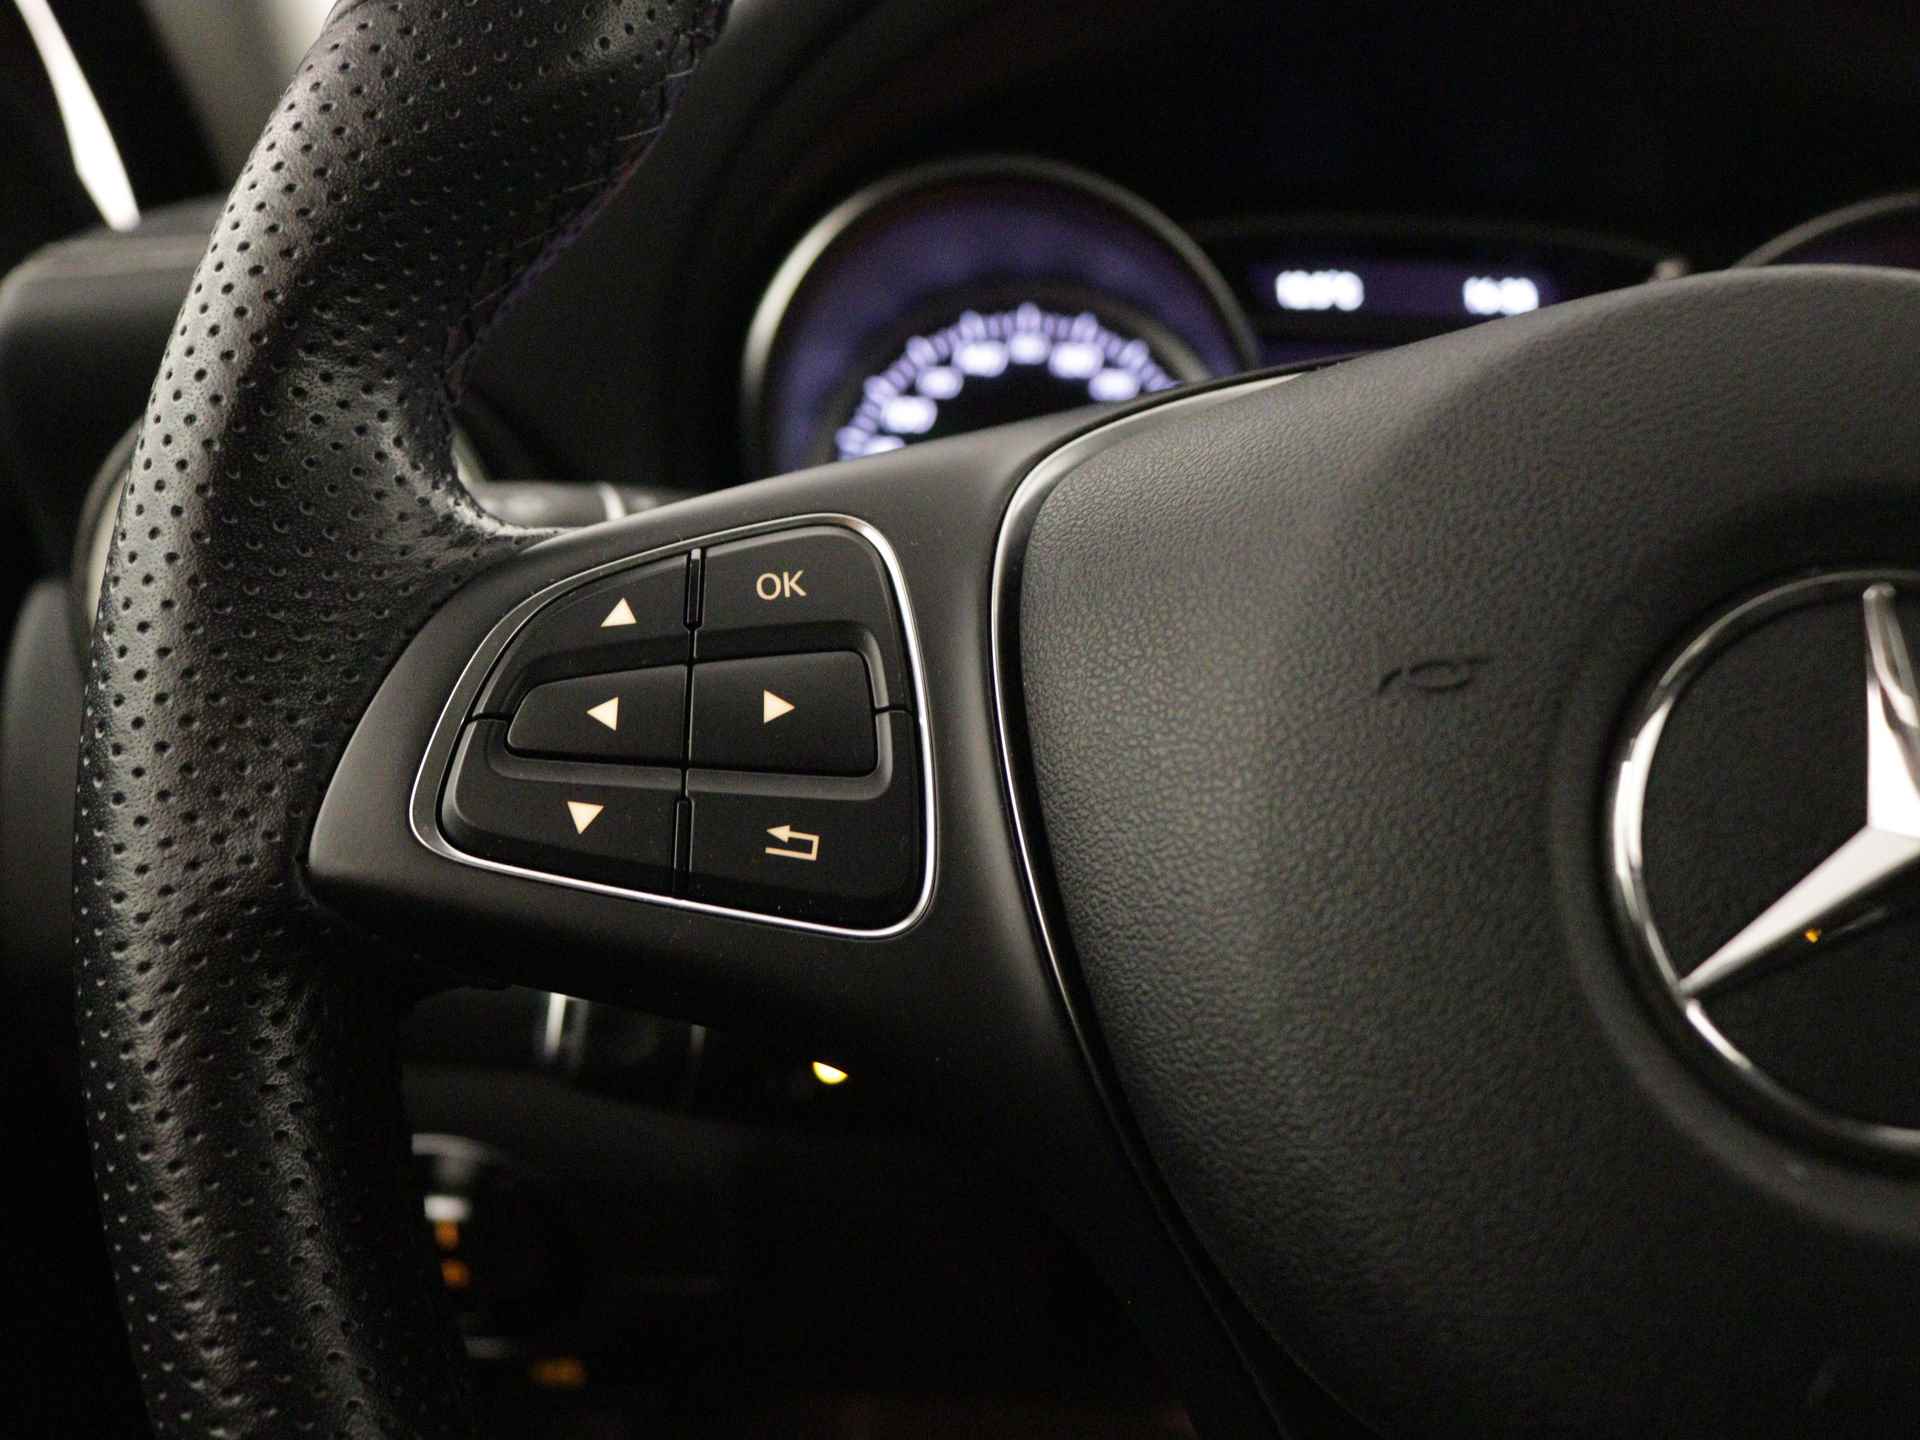 Mercedes-Benz GLA 200 AMG Premium Plus Limited | Multispaaks lichtmetalen velgen | Treeplanken | Navigatie | Parking support | Leder bekleding | inclusief 24 maanden MB Certified garantie voor europa - 21/39